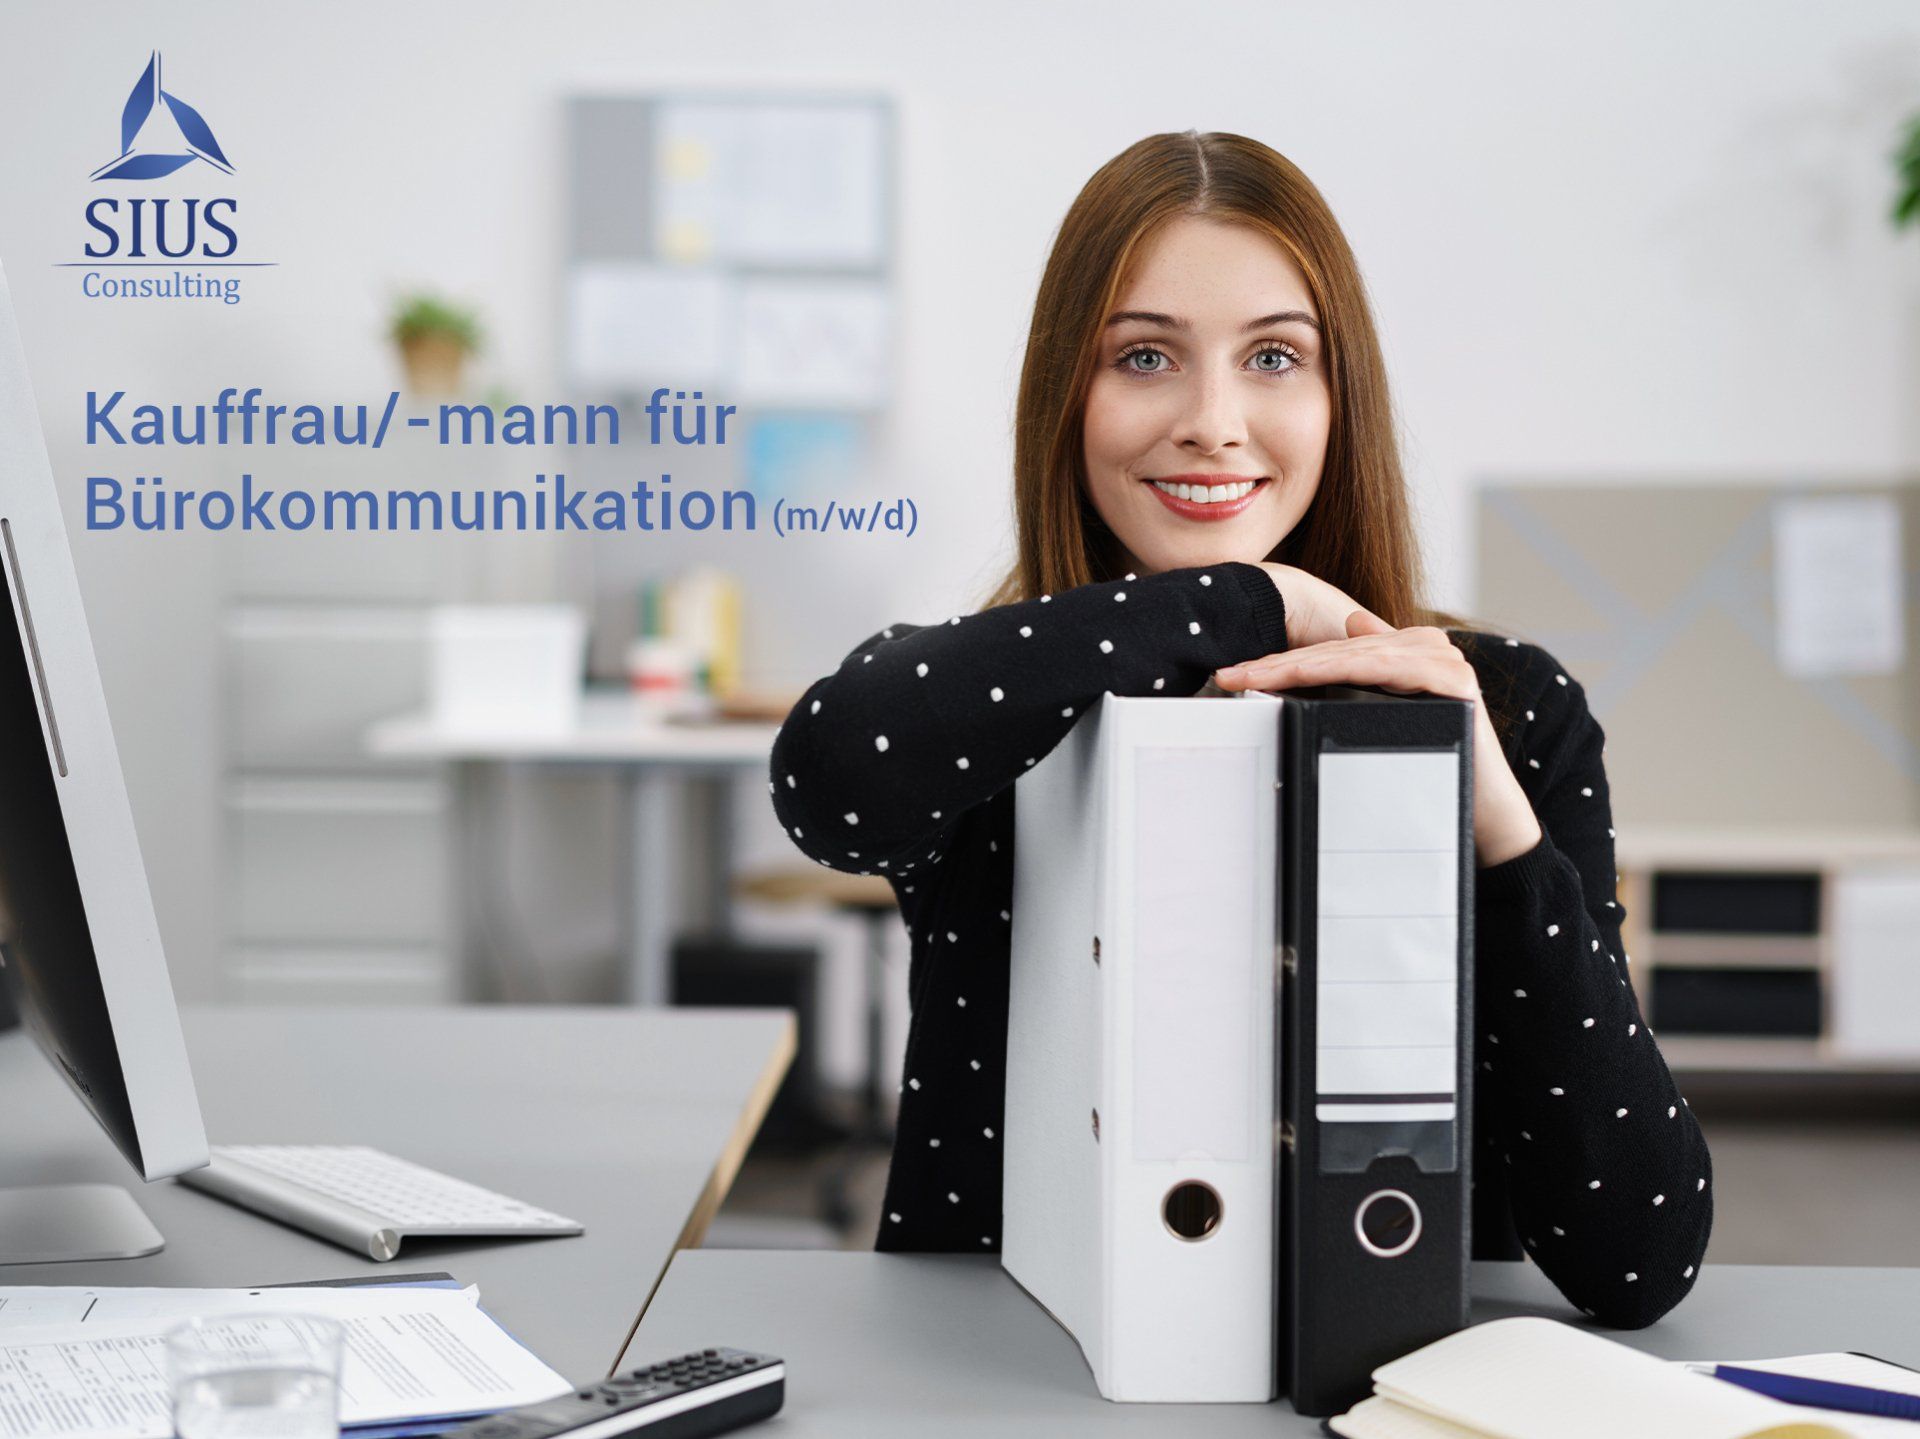 Stellenangebot als Kauffrau/-mann für Bürokommunikation bzw. Büromanagement bei SIUS Consulting am Standort Wildau (Berlin)